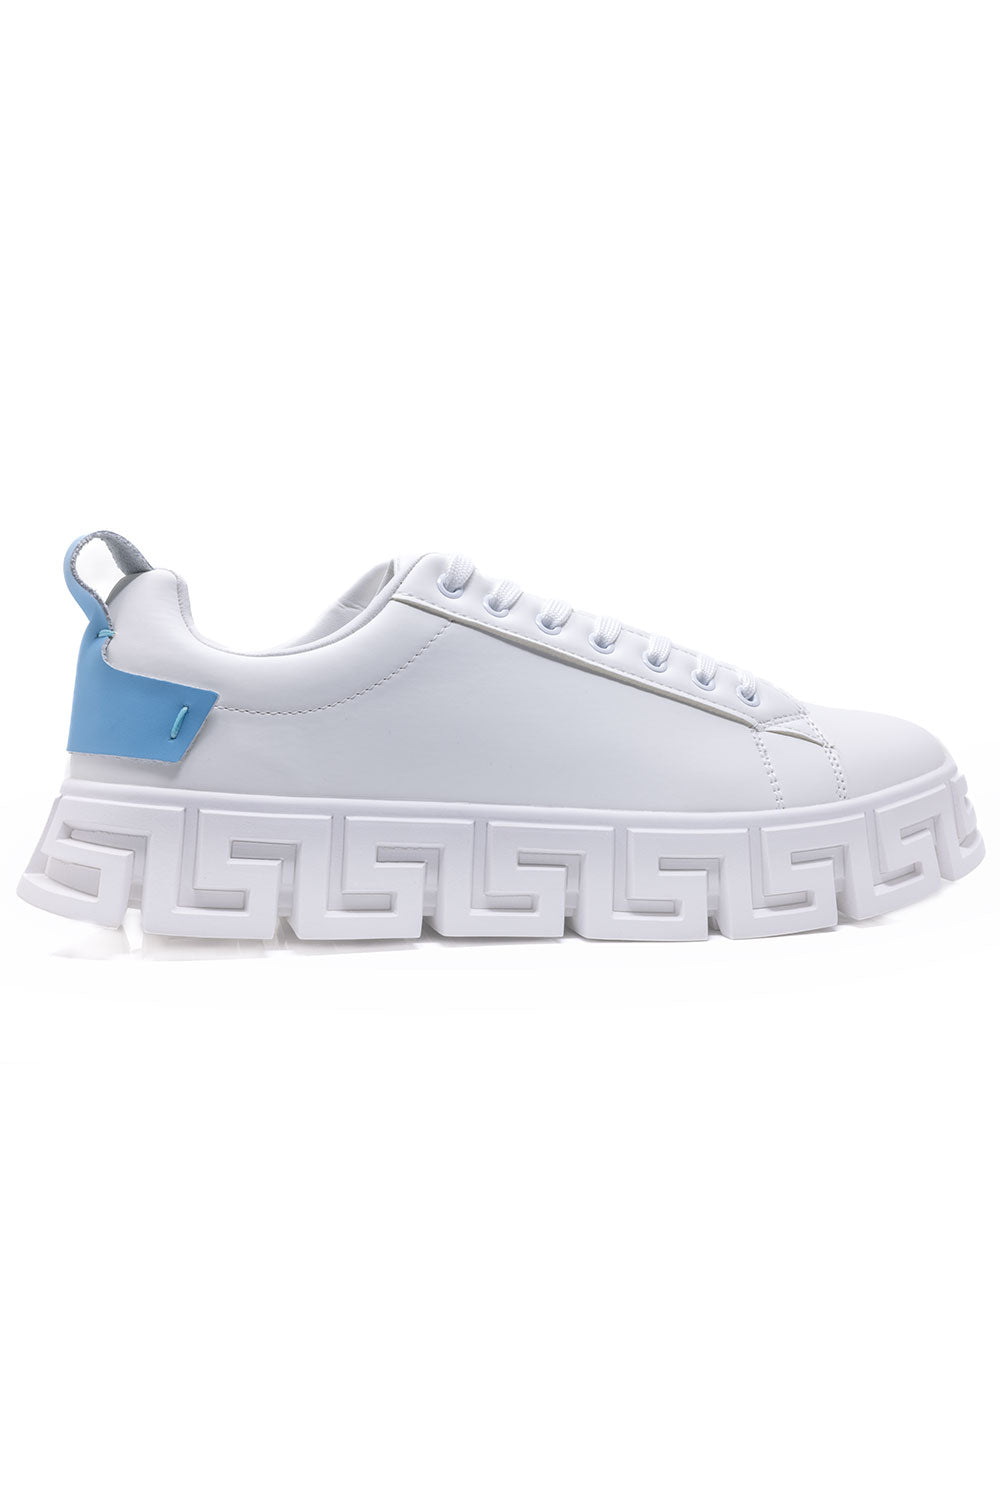 Barabas Men's Greek Key Sole Pattern Premium Sneakers 4SK06 Light Blue